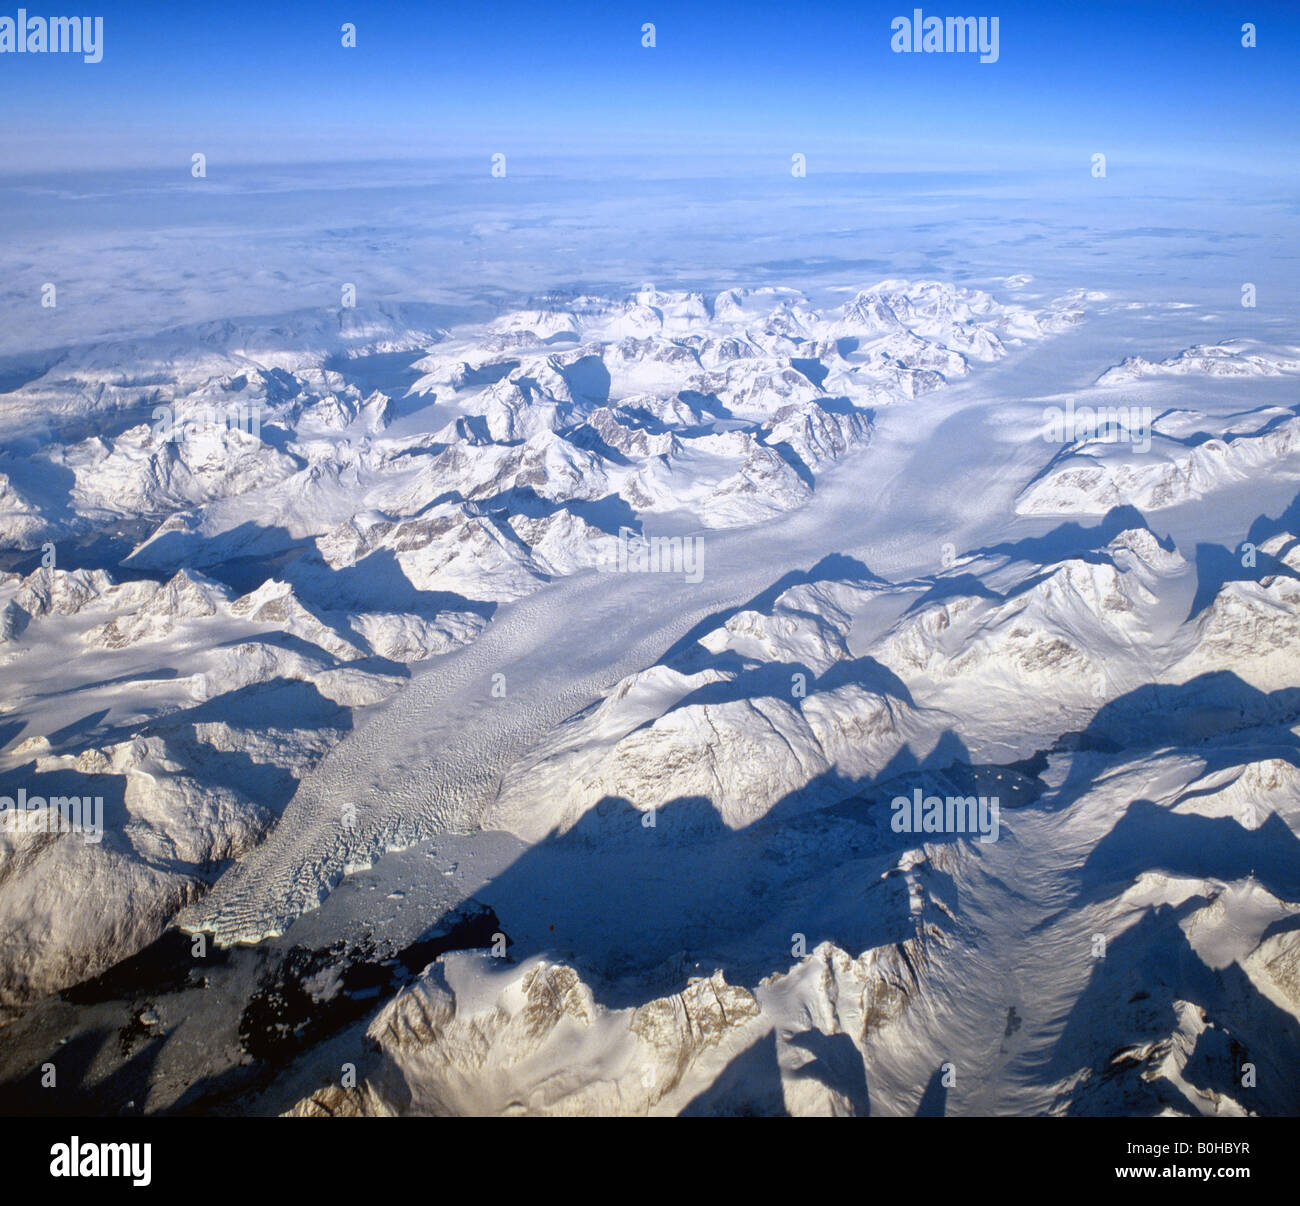 Glacier dans le sud du Groenland, vue depuis une altitude de 10 000 mètres, vue aérienne, Groenland Banque D'Images